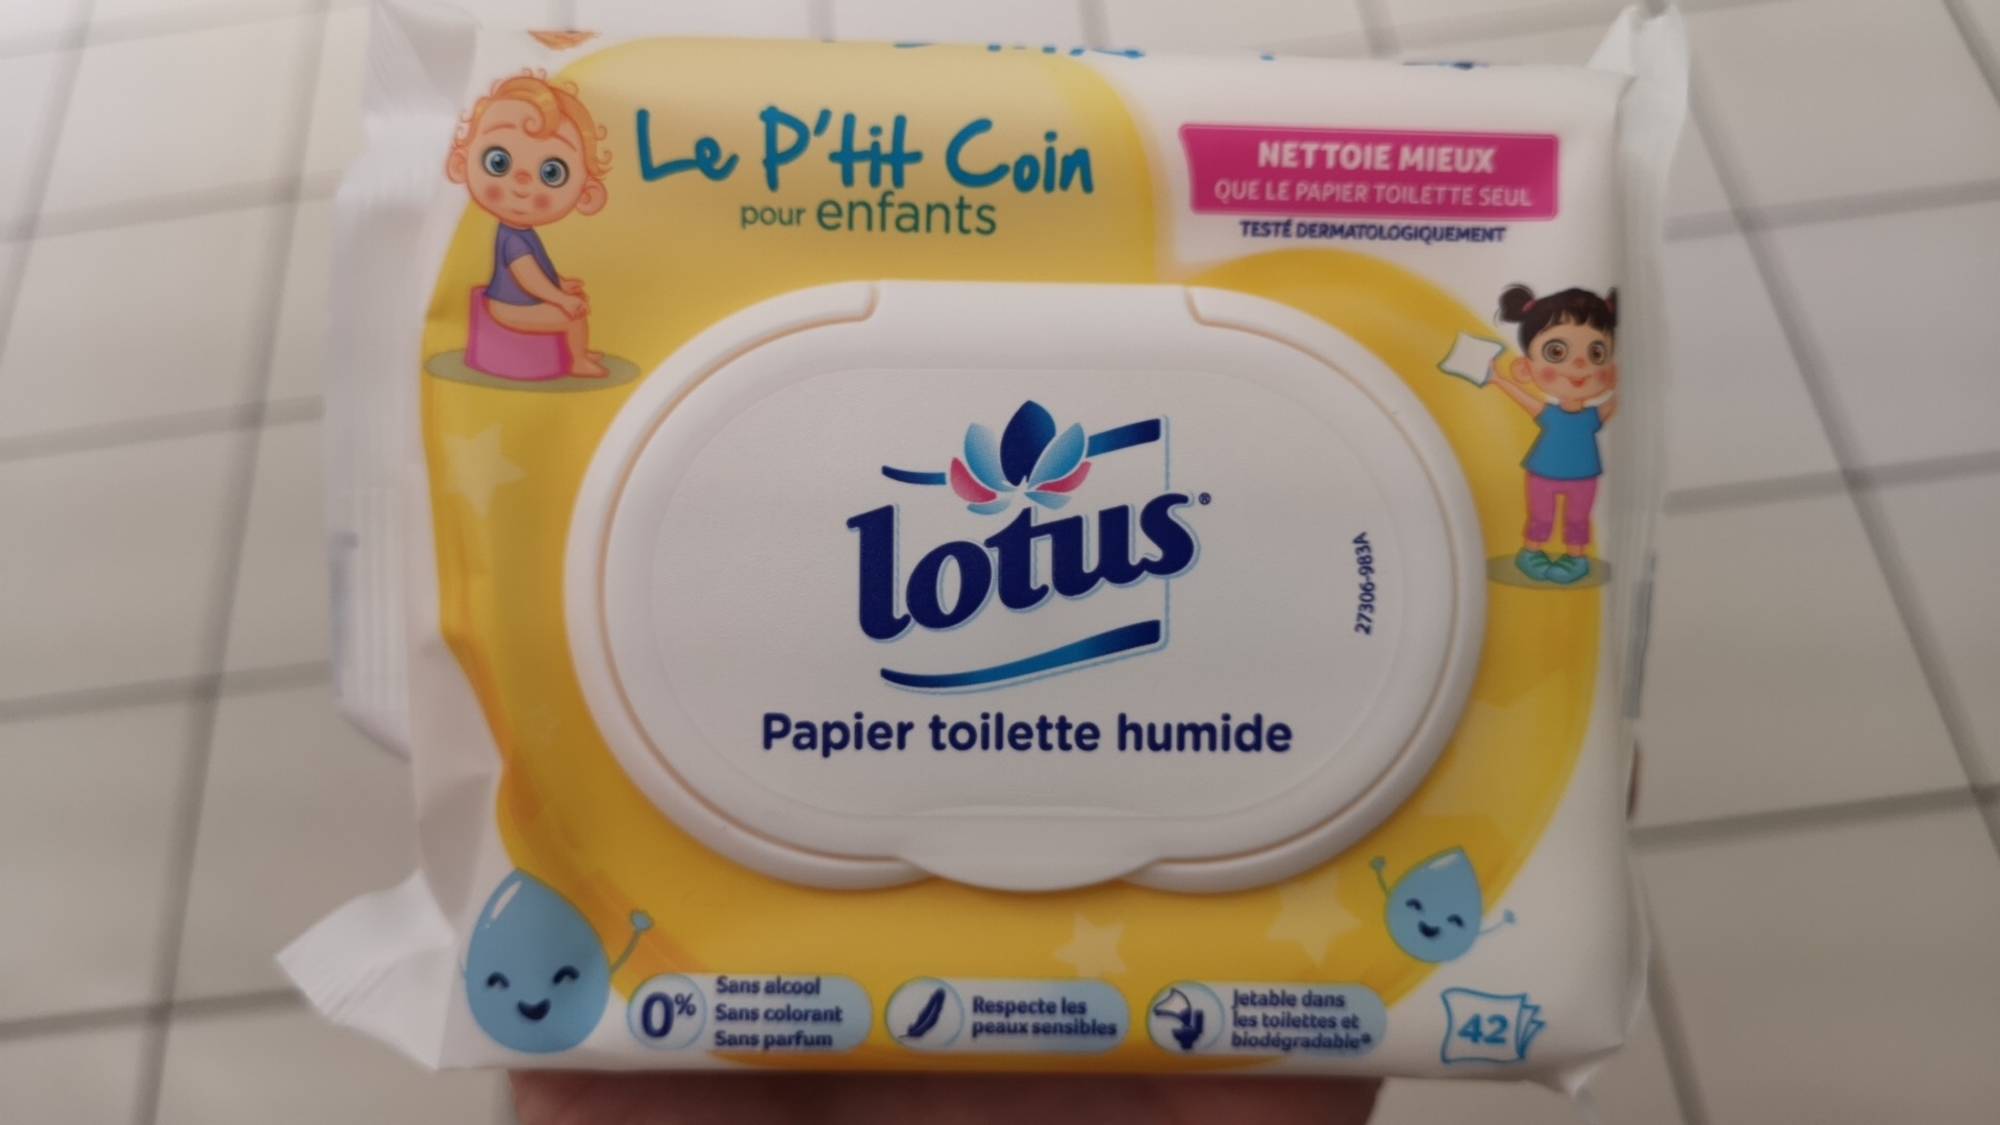 Composition LOTUS Le p'tit coin pour enfants - Papier toilette